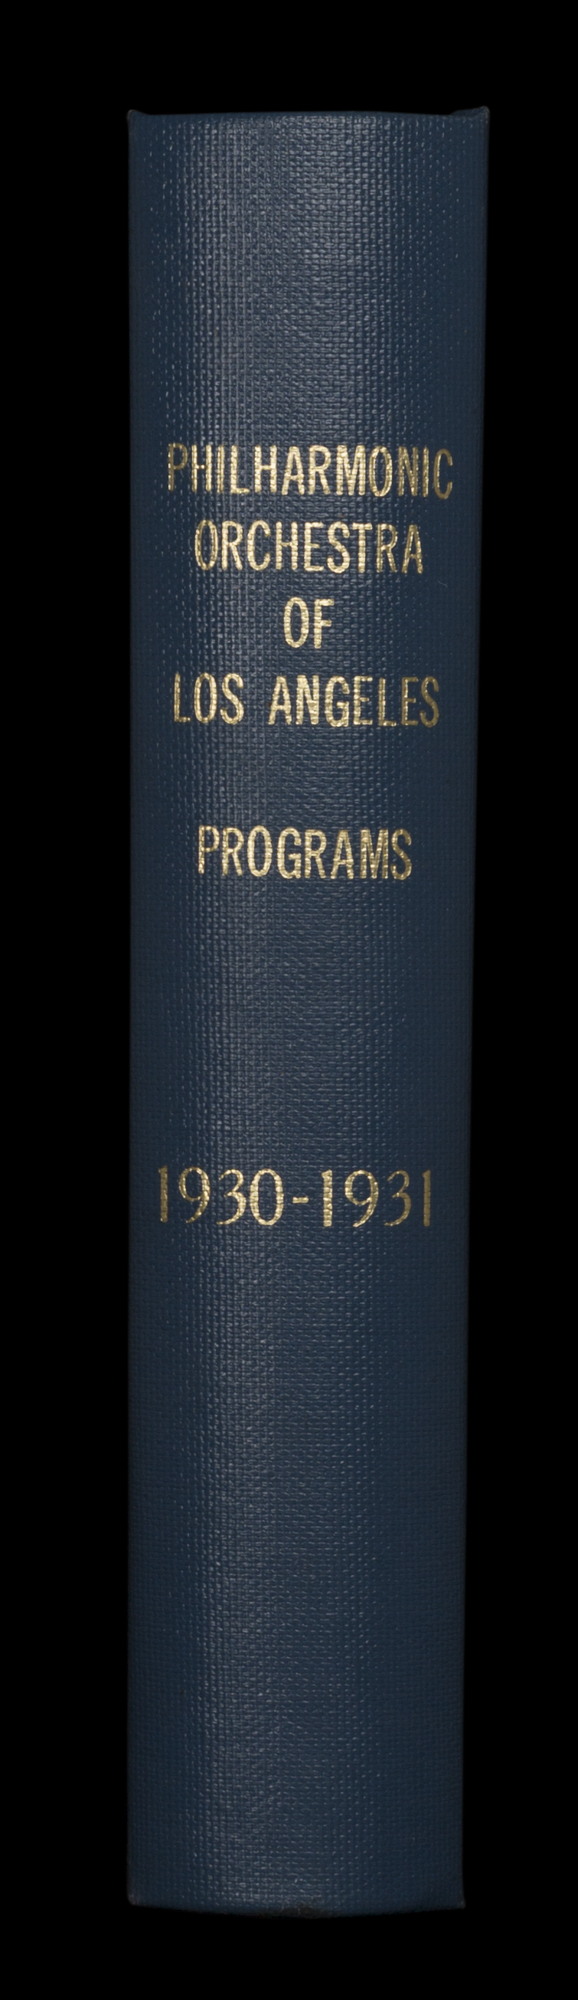 LAPO_ProgramBook_Spine_1930-1931.jpg